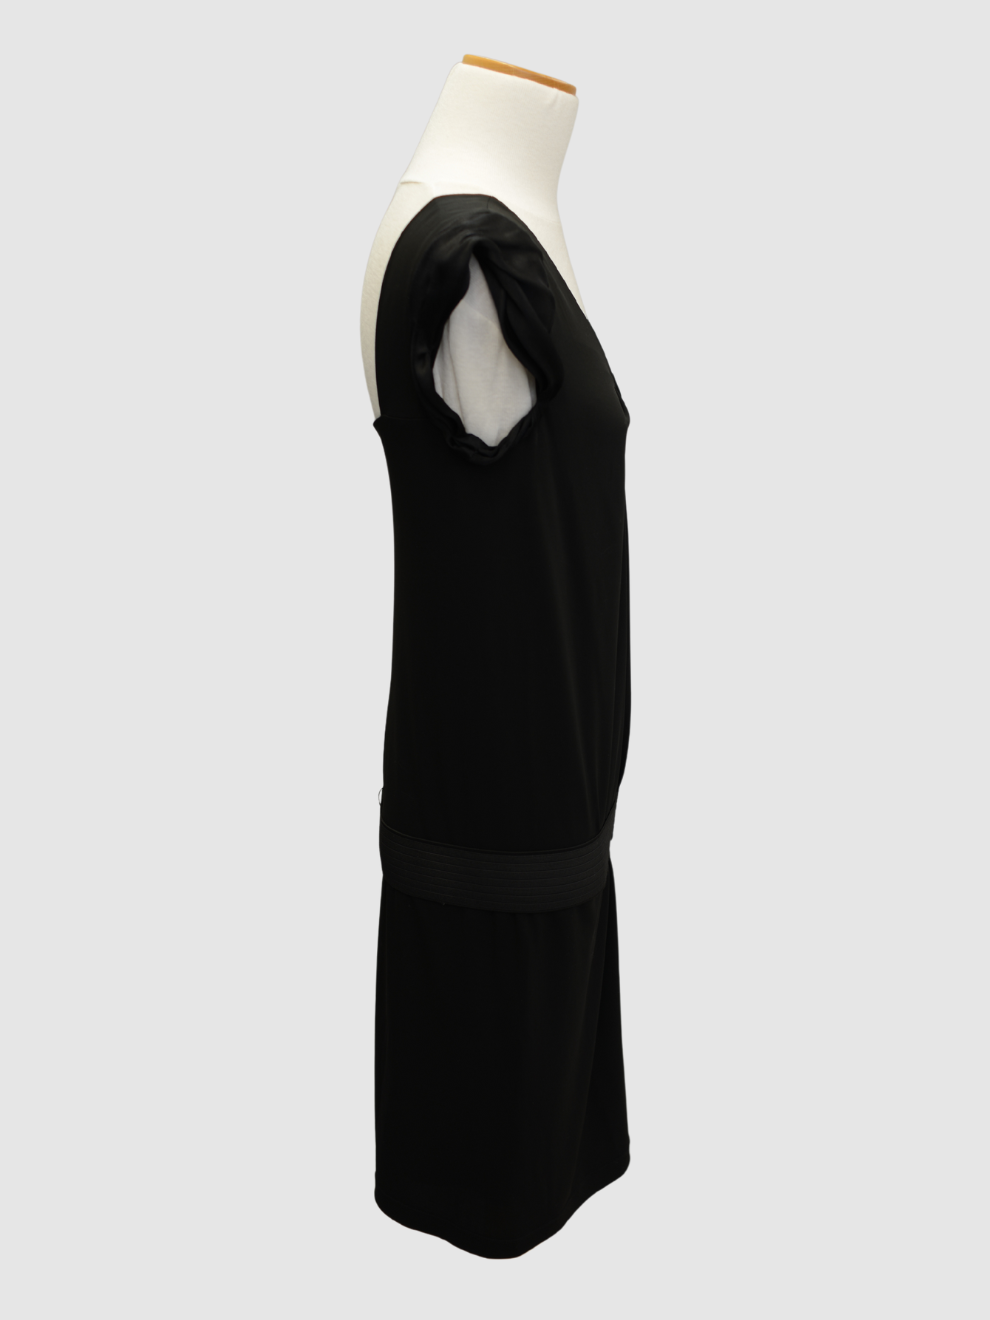 Schwarzes Kleid mit Gürtel von Alberta Ferretti